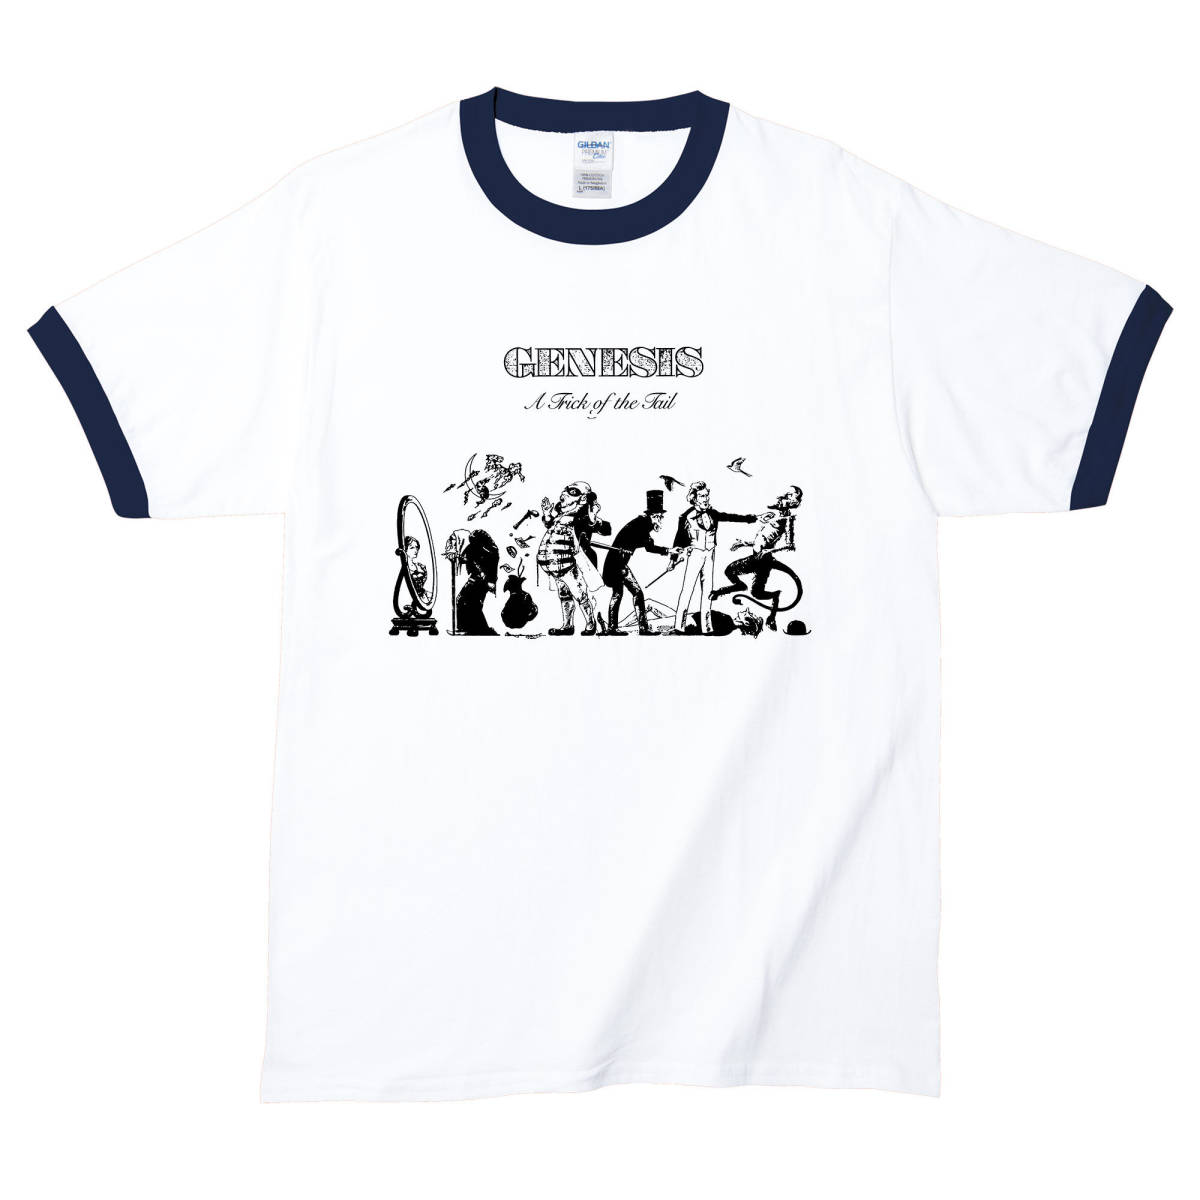 【Lサイズ Tシャツ】Genesis ジェネシス プログレッシブ ロック サイケデリック レコード CD LP 60s 70s ヒッピー jazz _画像1